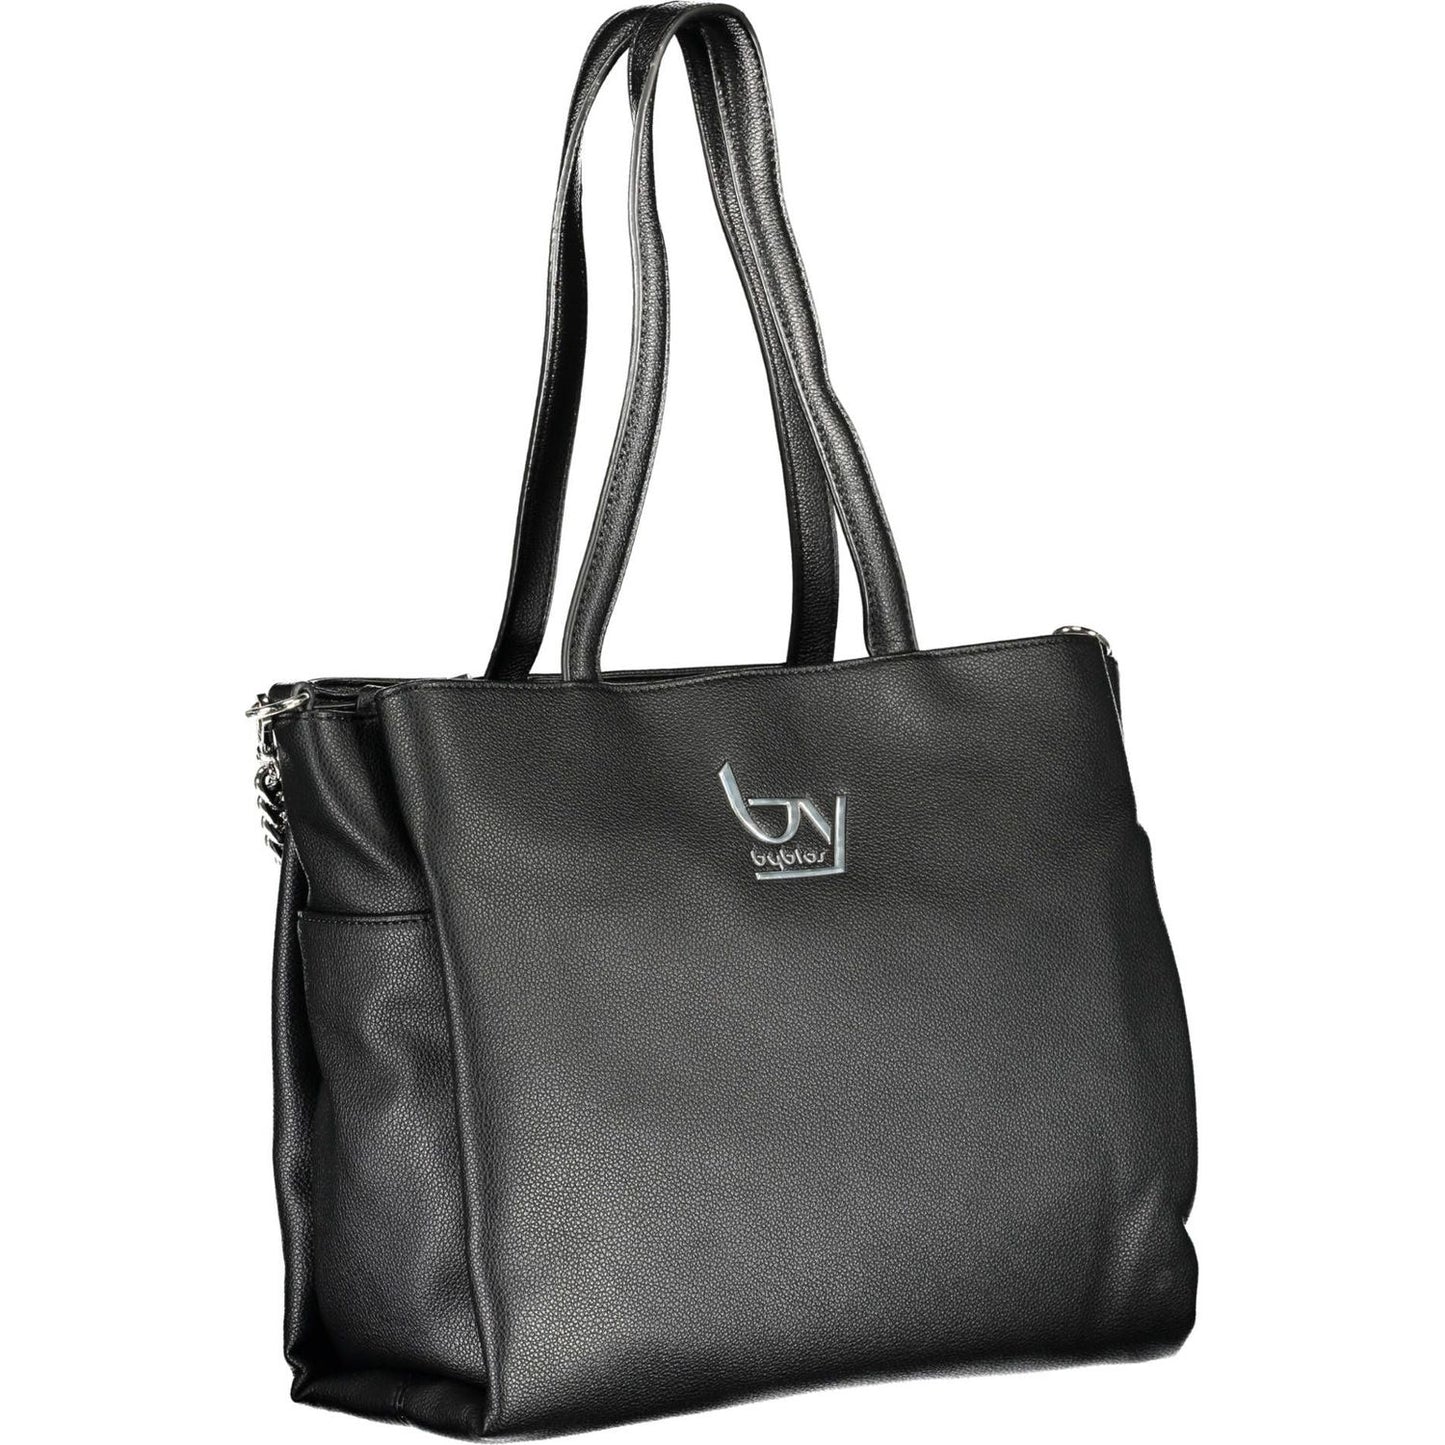 BYBLOS | Elegant Black Chain-Strap Handbag| McRichard Designer Brands   